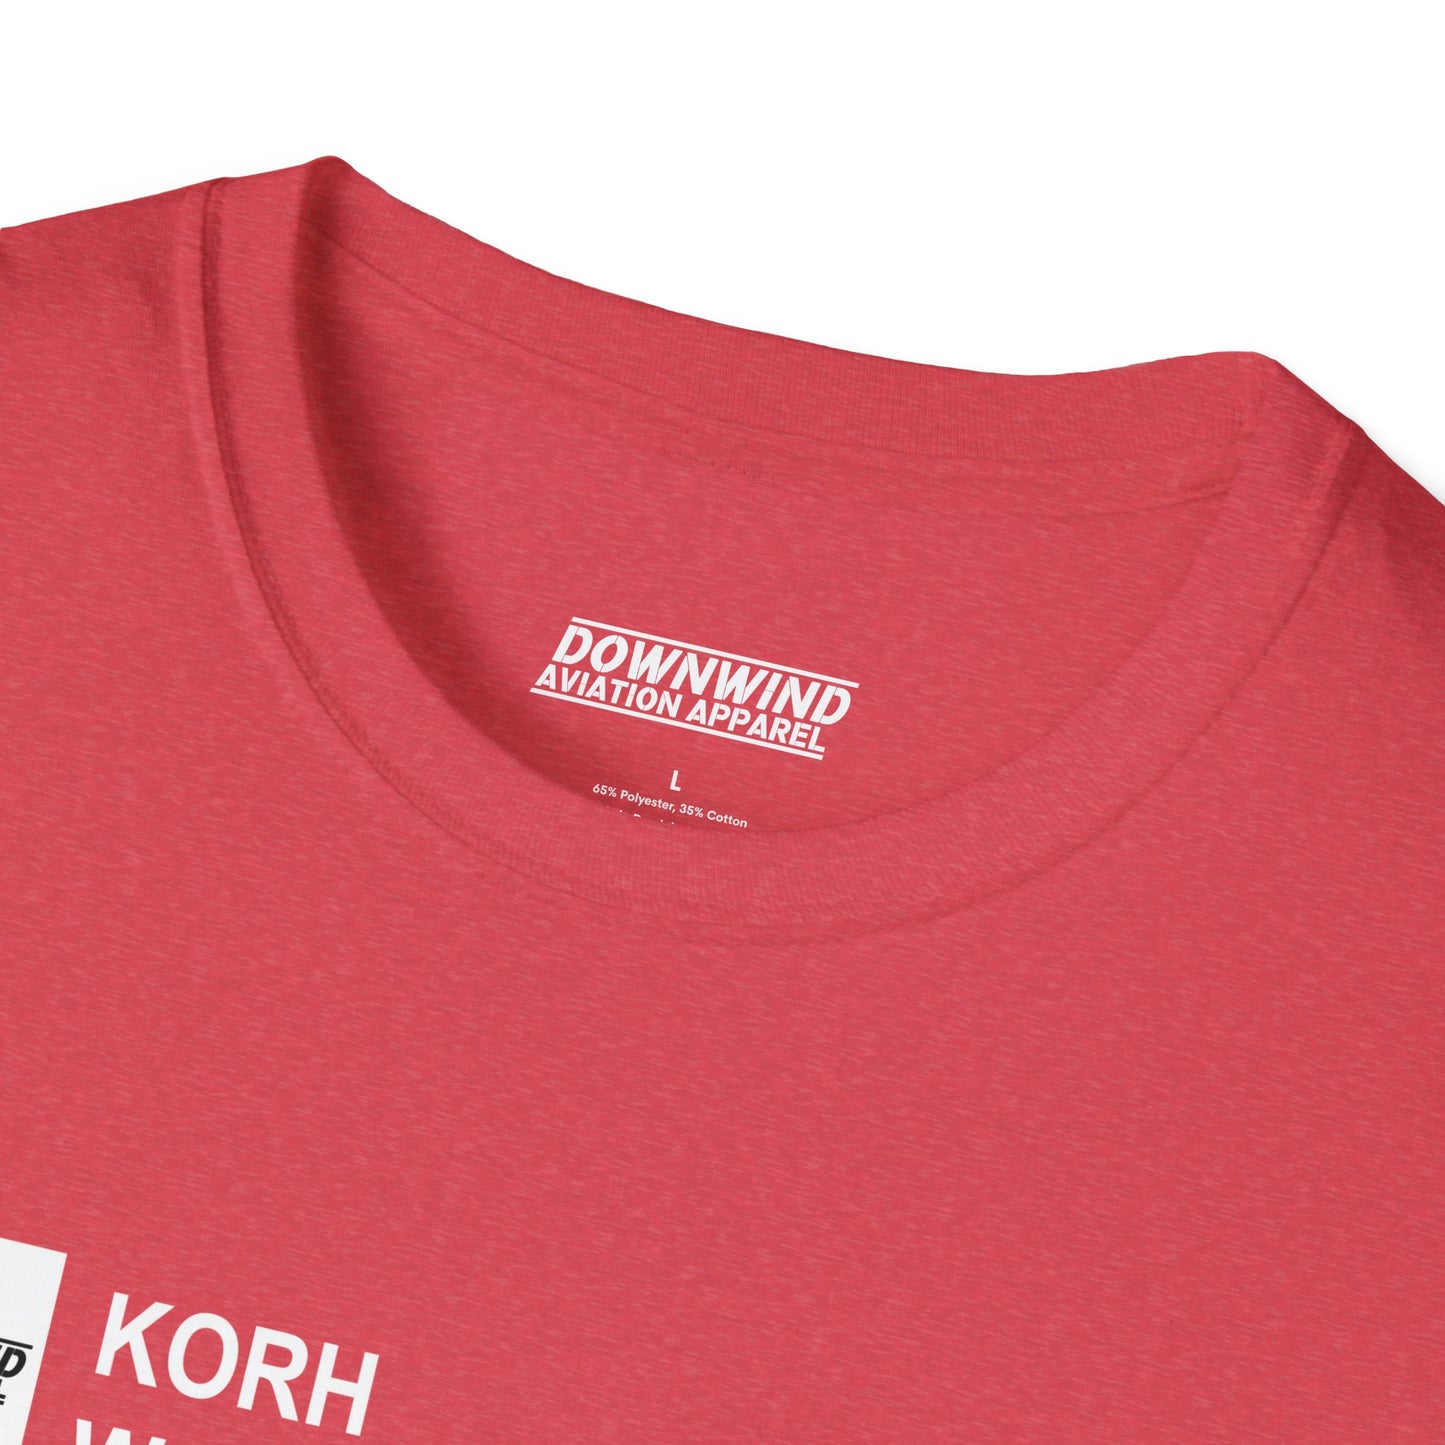 KORH / Worchester Airport T-Shirt